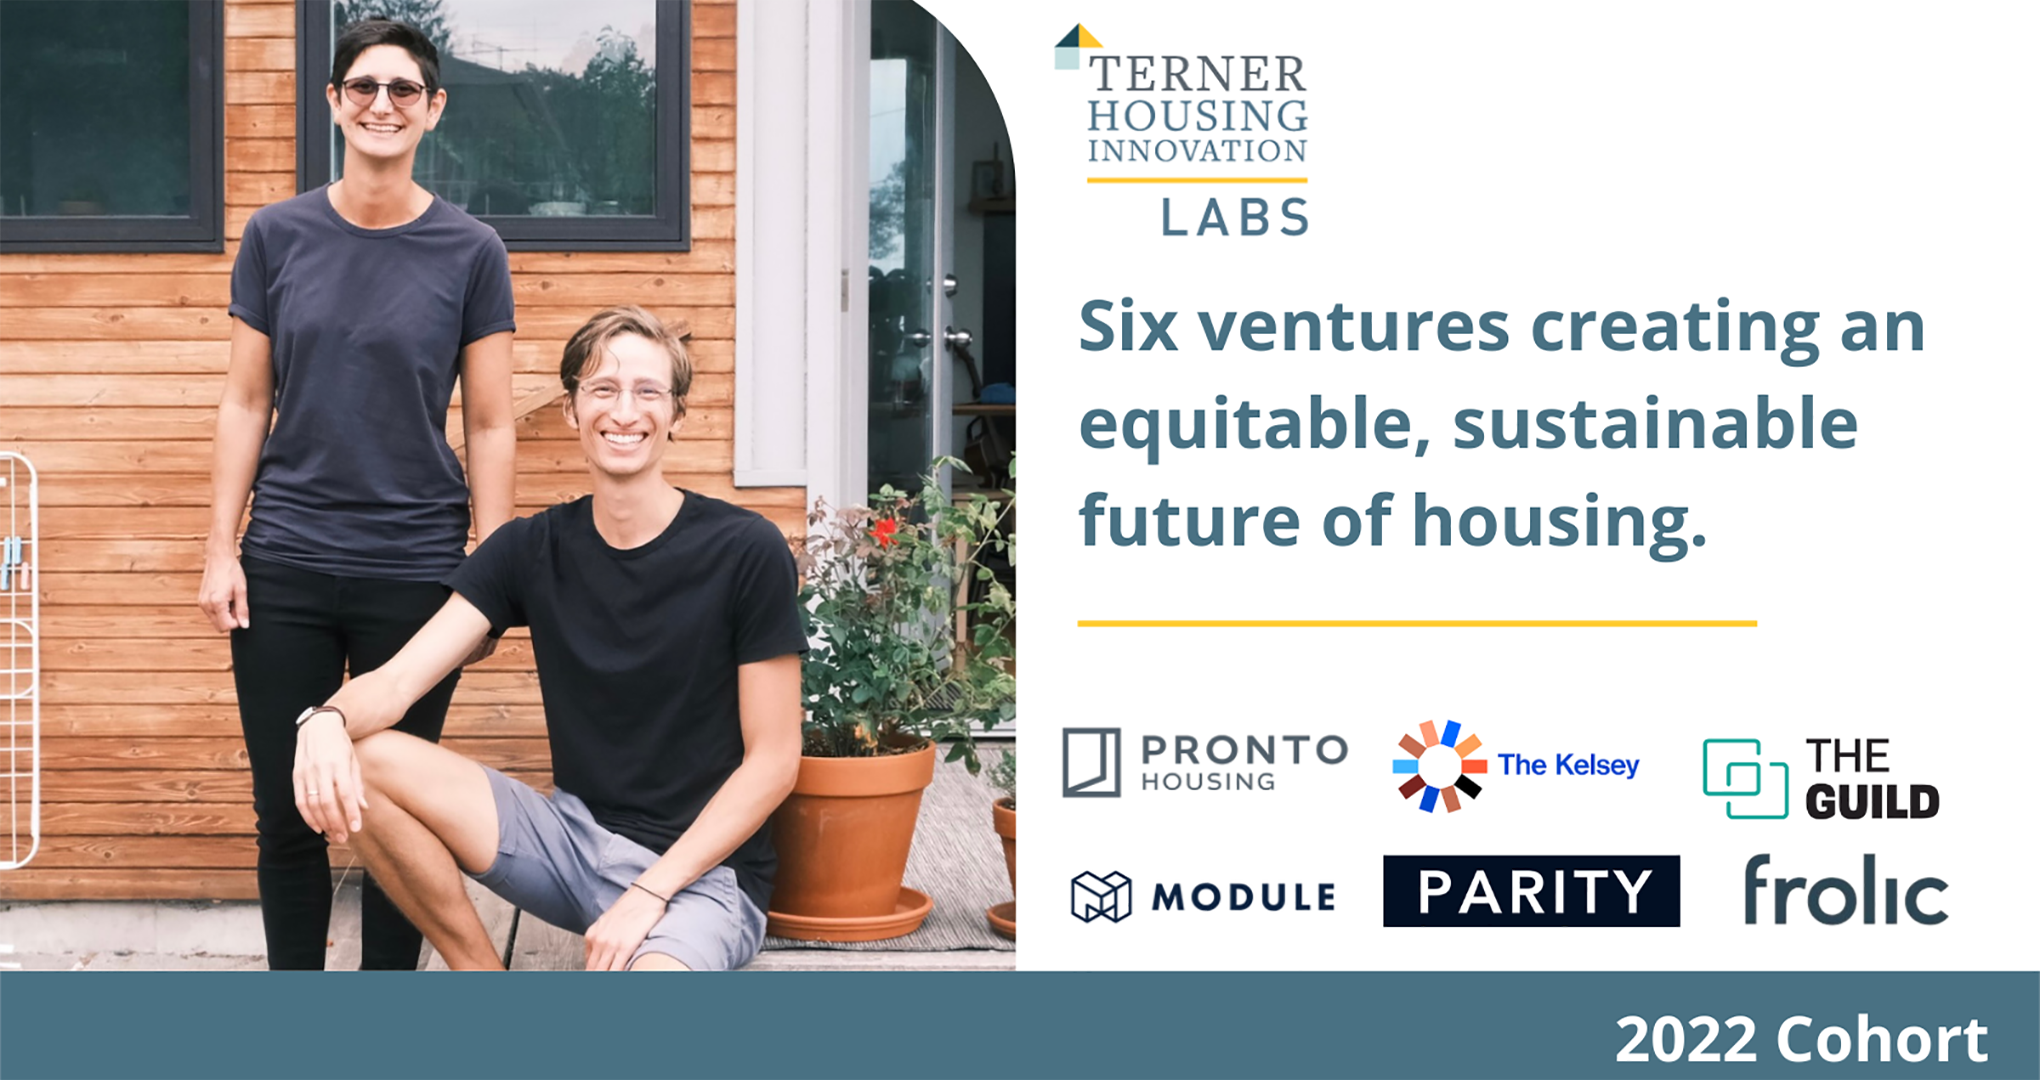 Frolic join Terner Housing Lab 2022 cohort